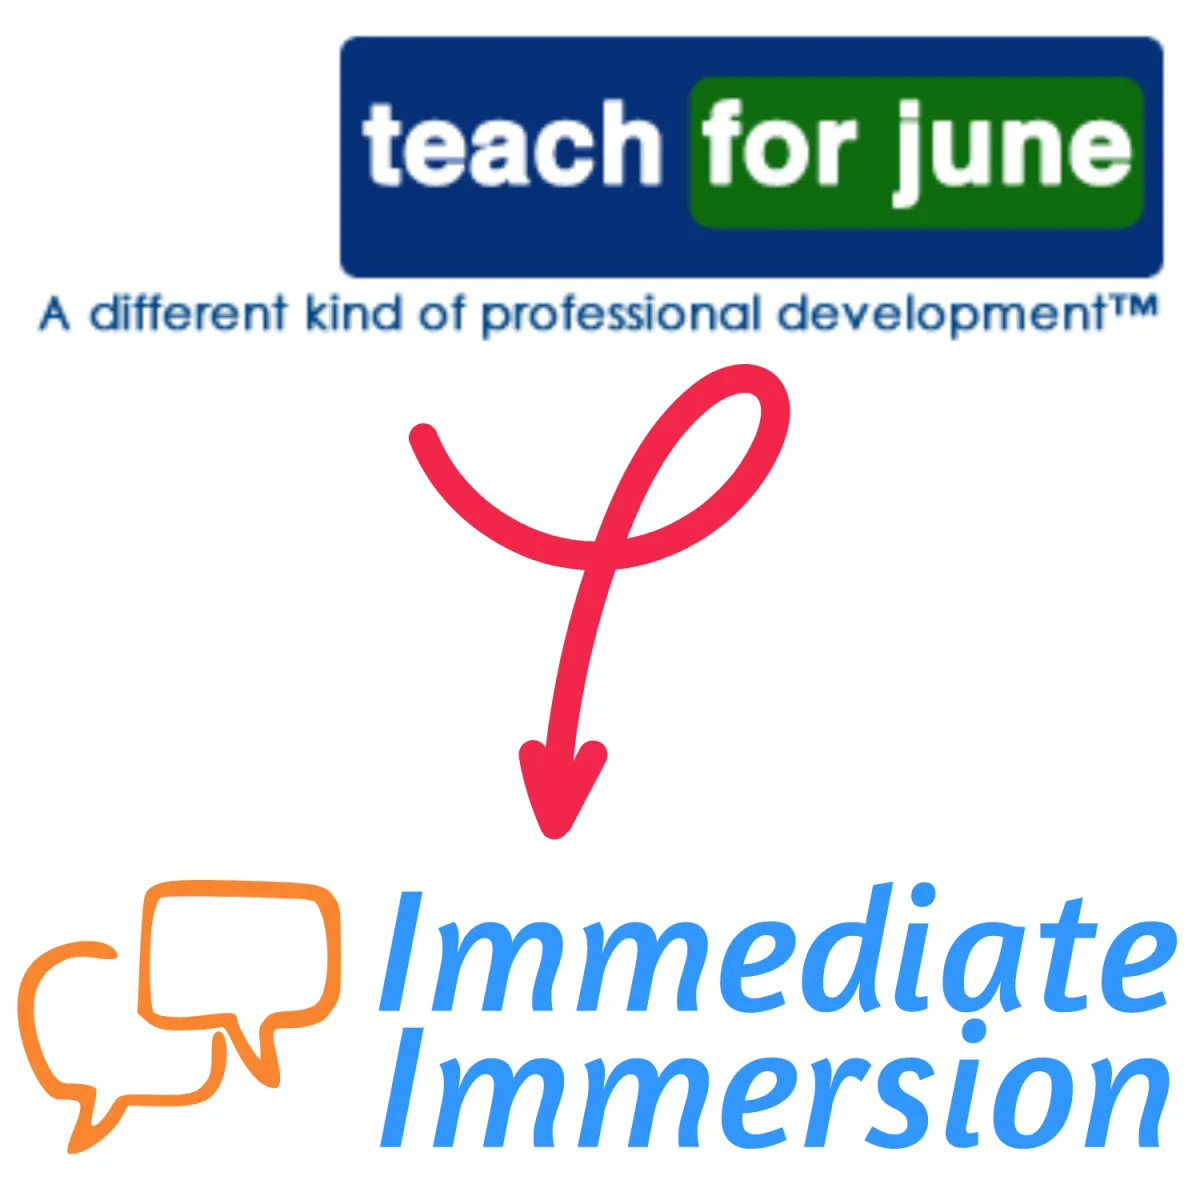 Teachforjune to Immediate Immersion